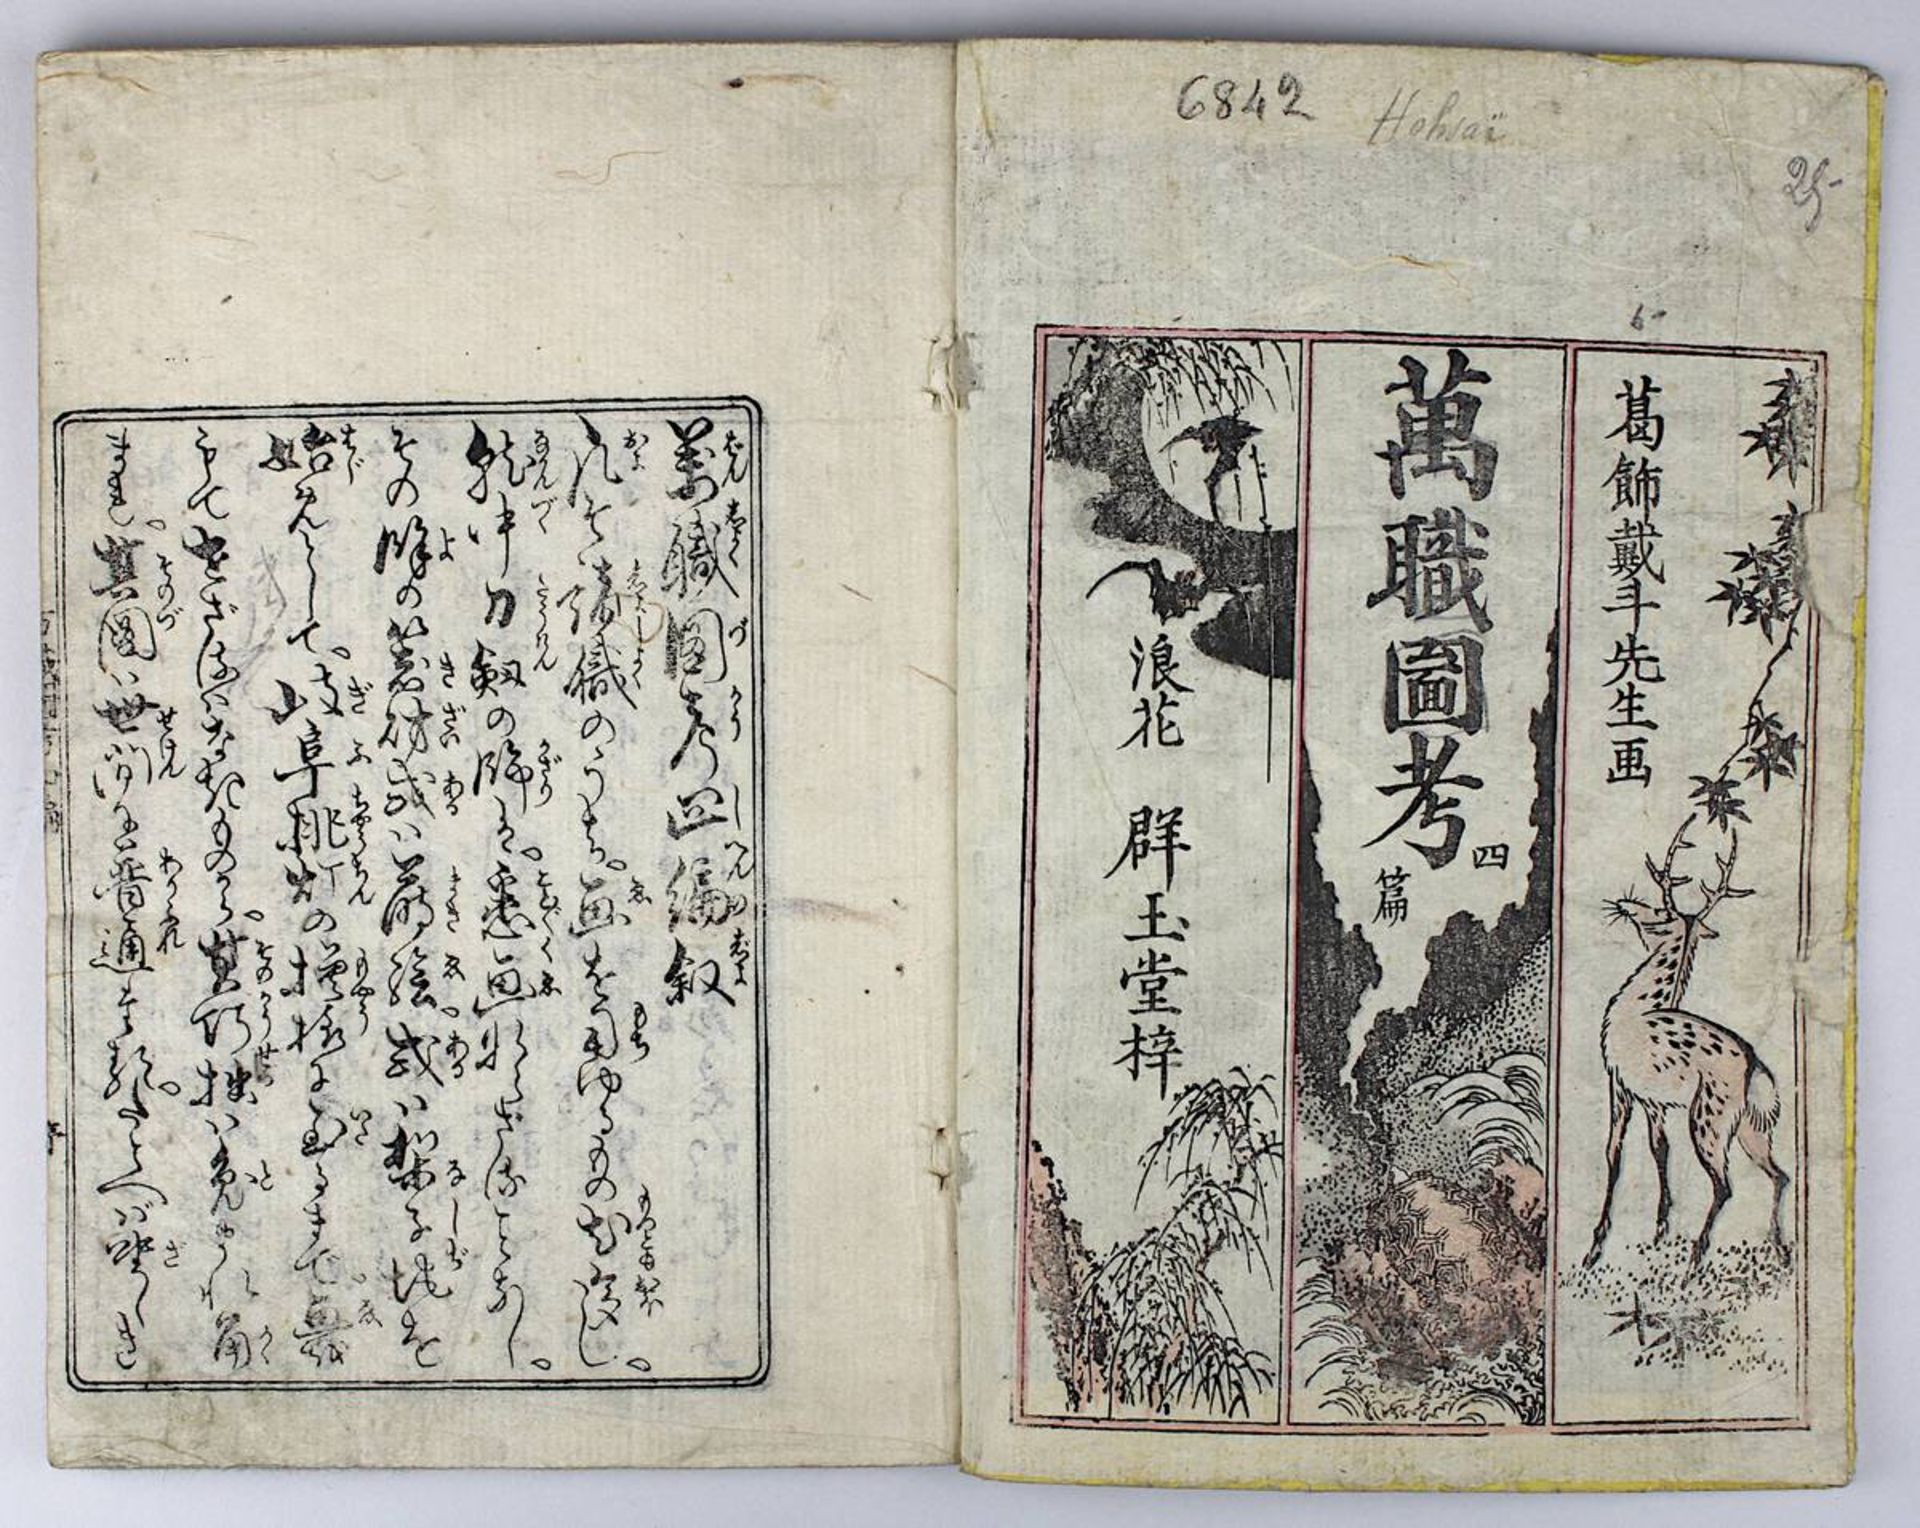 Katsushika Taito (aktiv Japan 1810 - 1853), Holzschnittbuch Banshoku zuko, Bd. 3 von insgesamt 5 - Bild 4 aus 7